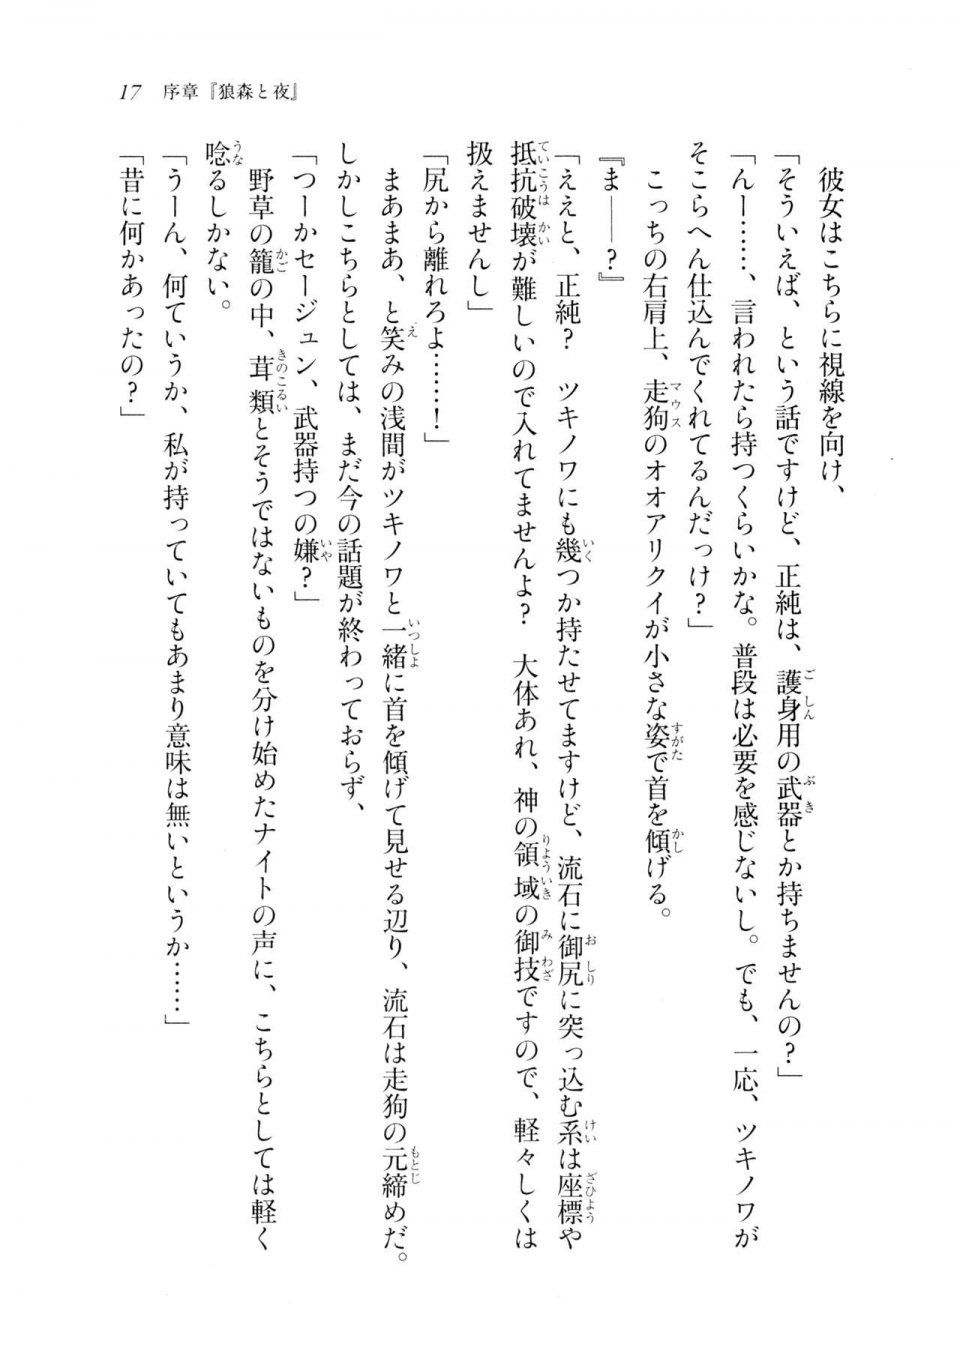 Kyoukai Senjou no Horizon LN Sidestory Vol 2 - Photo #16